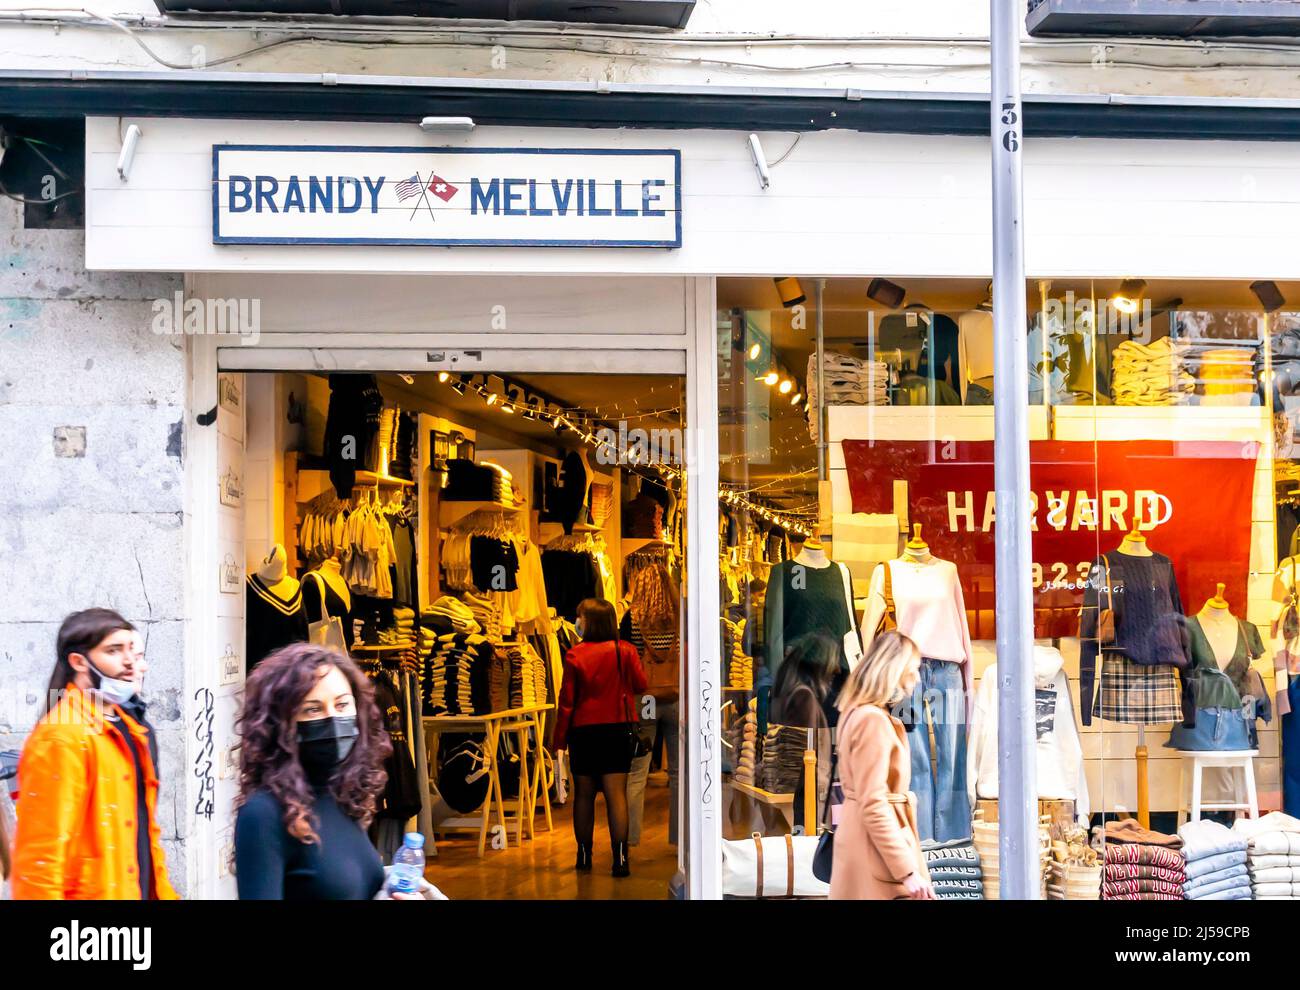 Brandy Melville, magasin de mode de vêtements pour jeunes à Malasana, Madrid, Espagne Banque D'Images